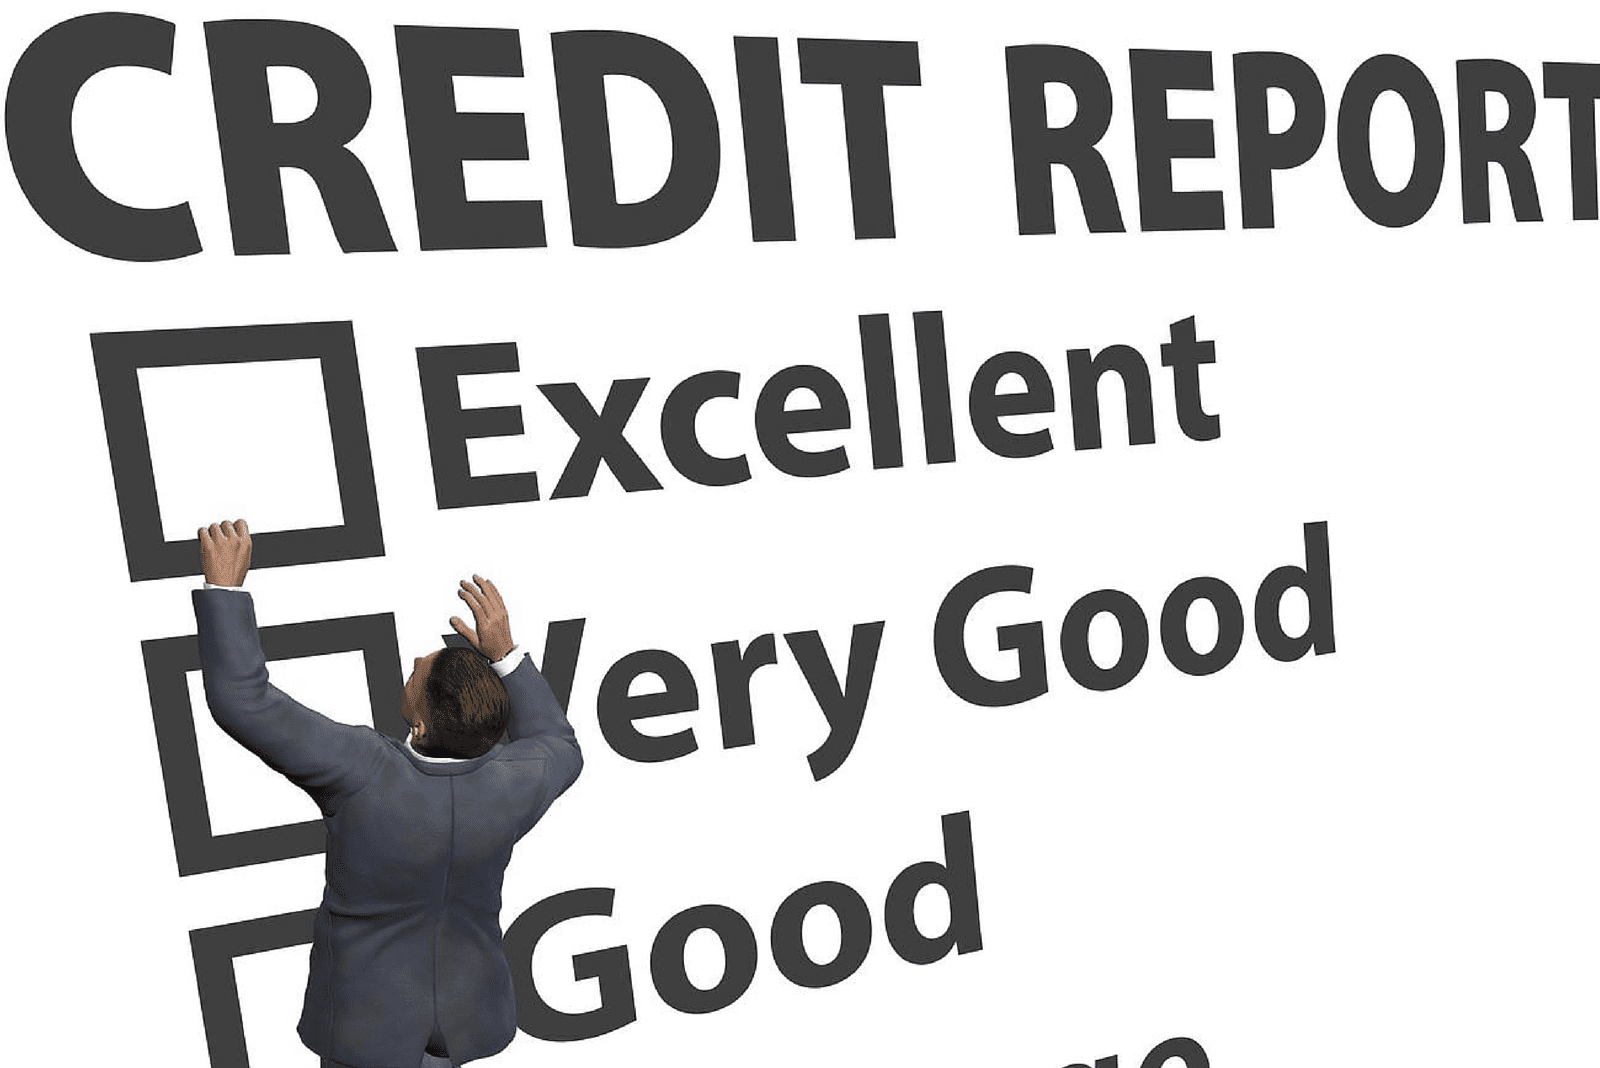 Credit Report